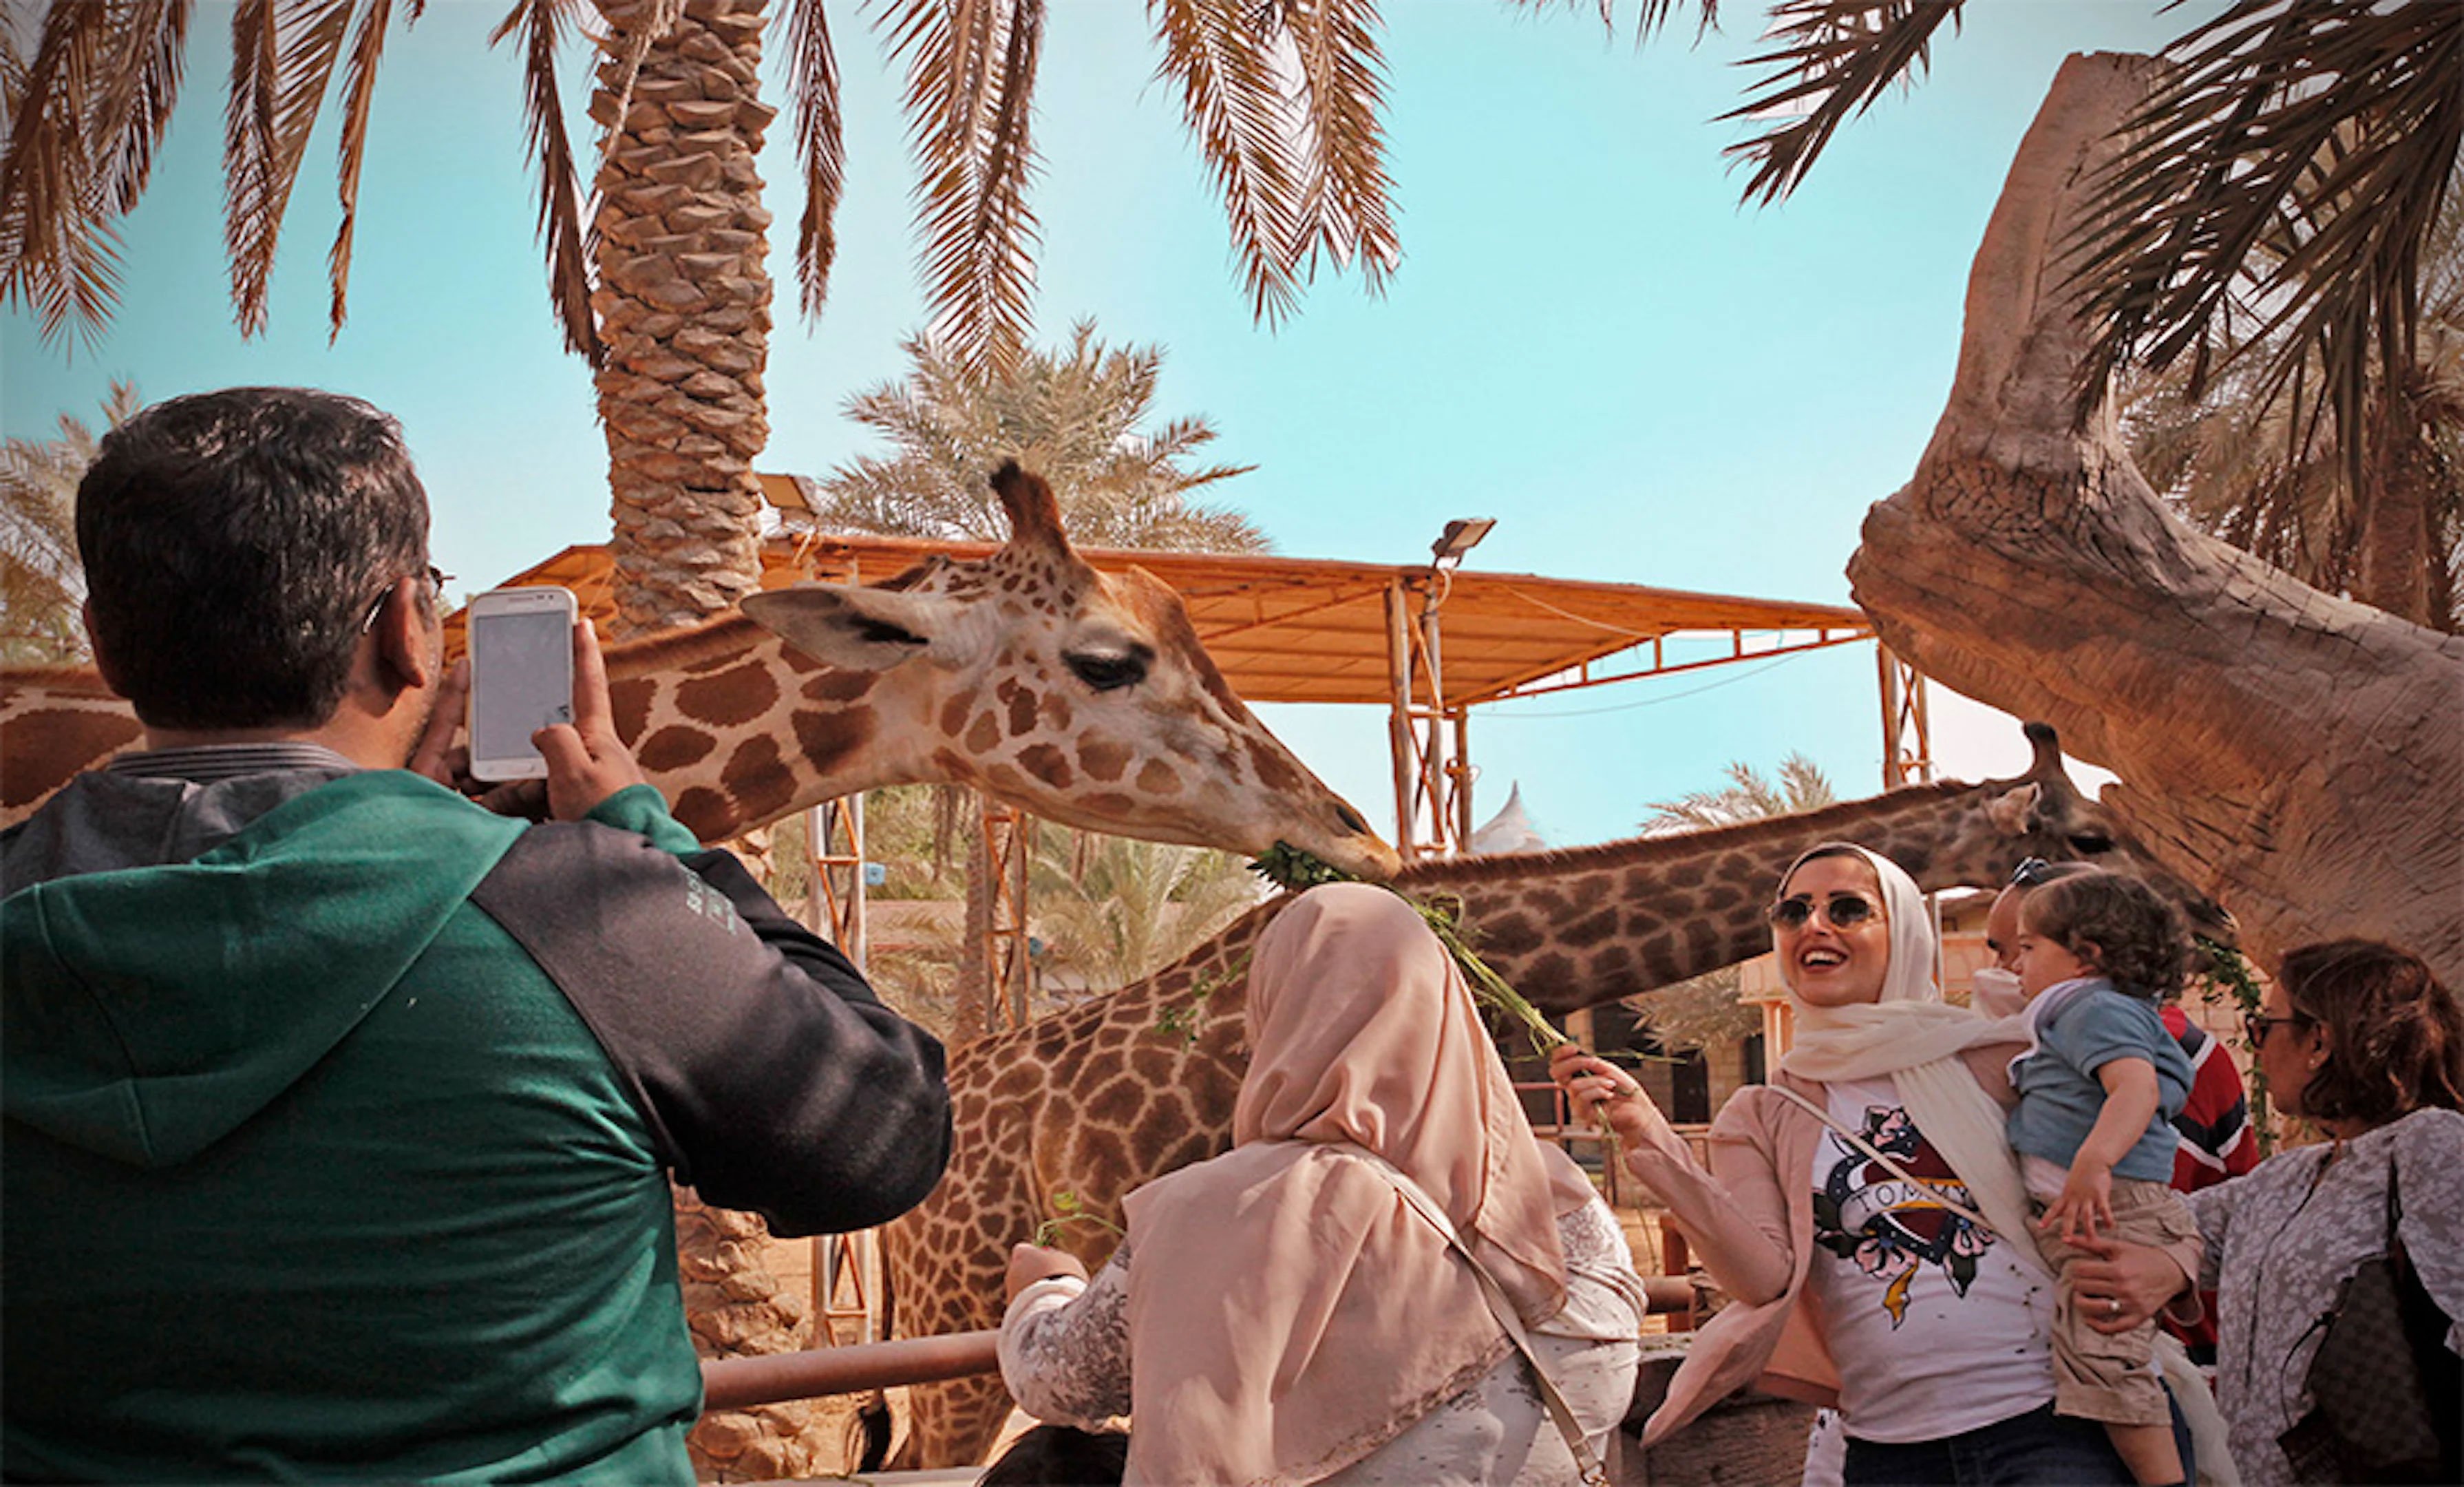 4. Emirates Park Zoo